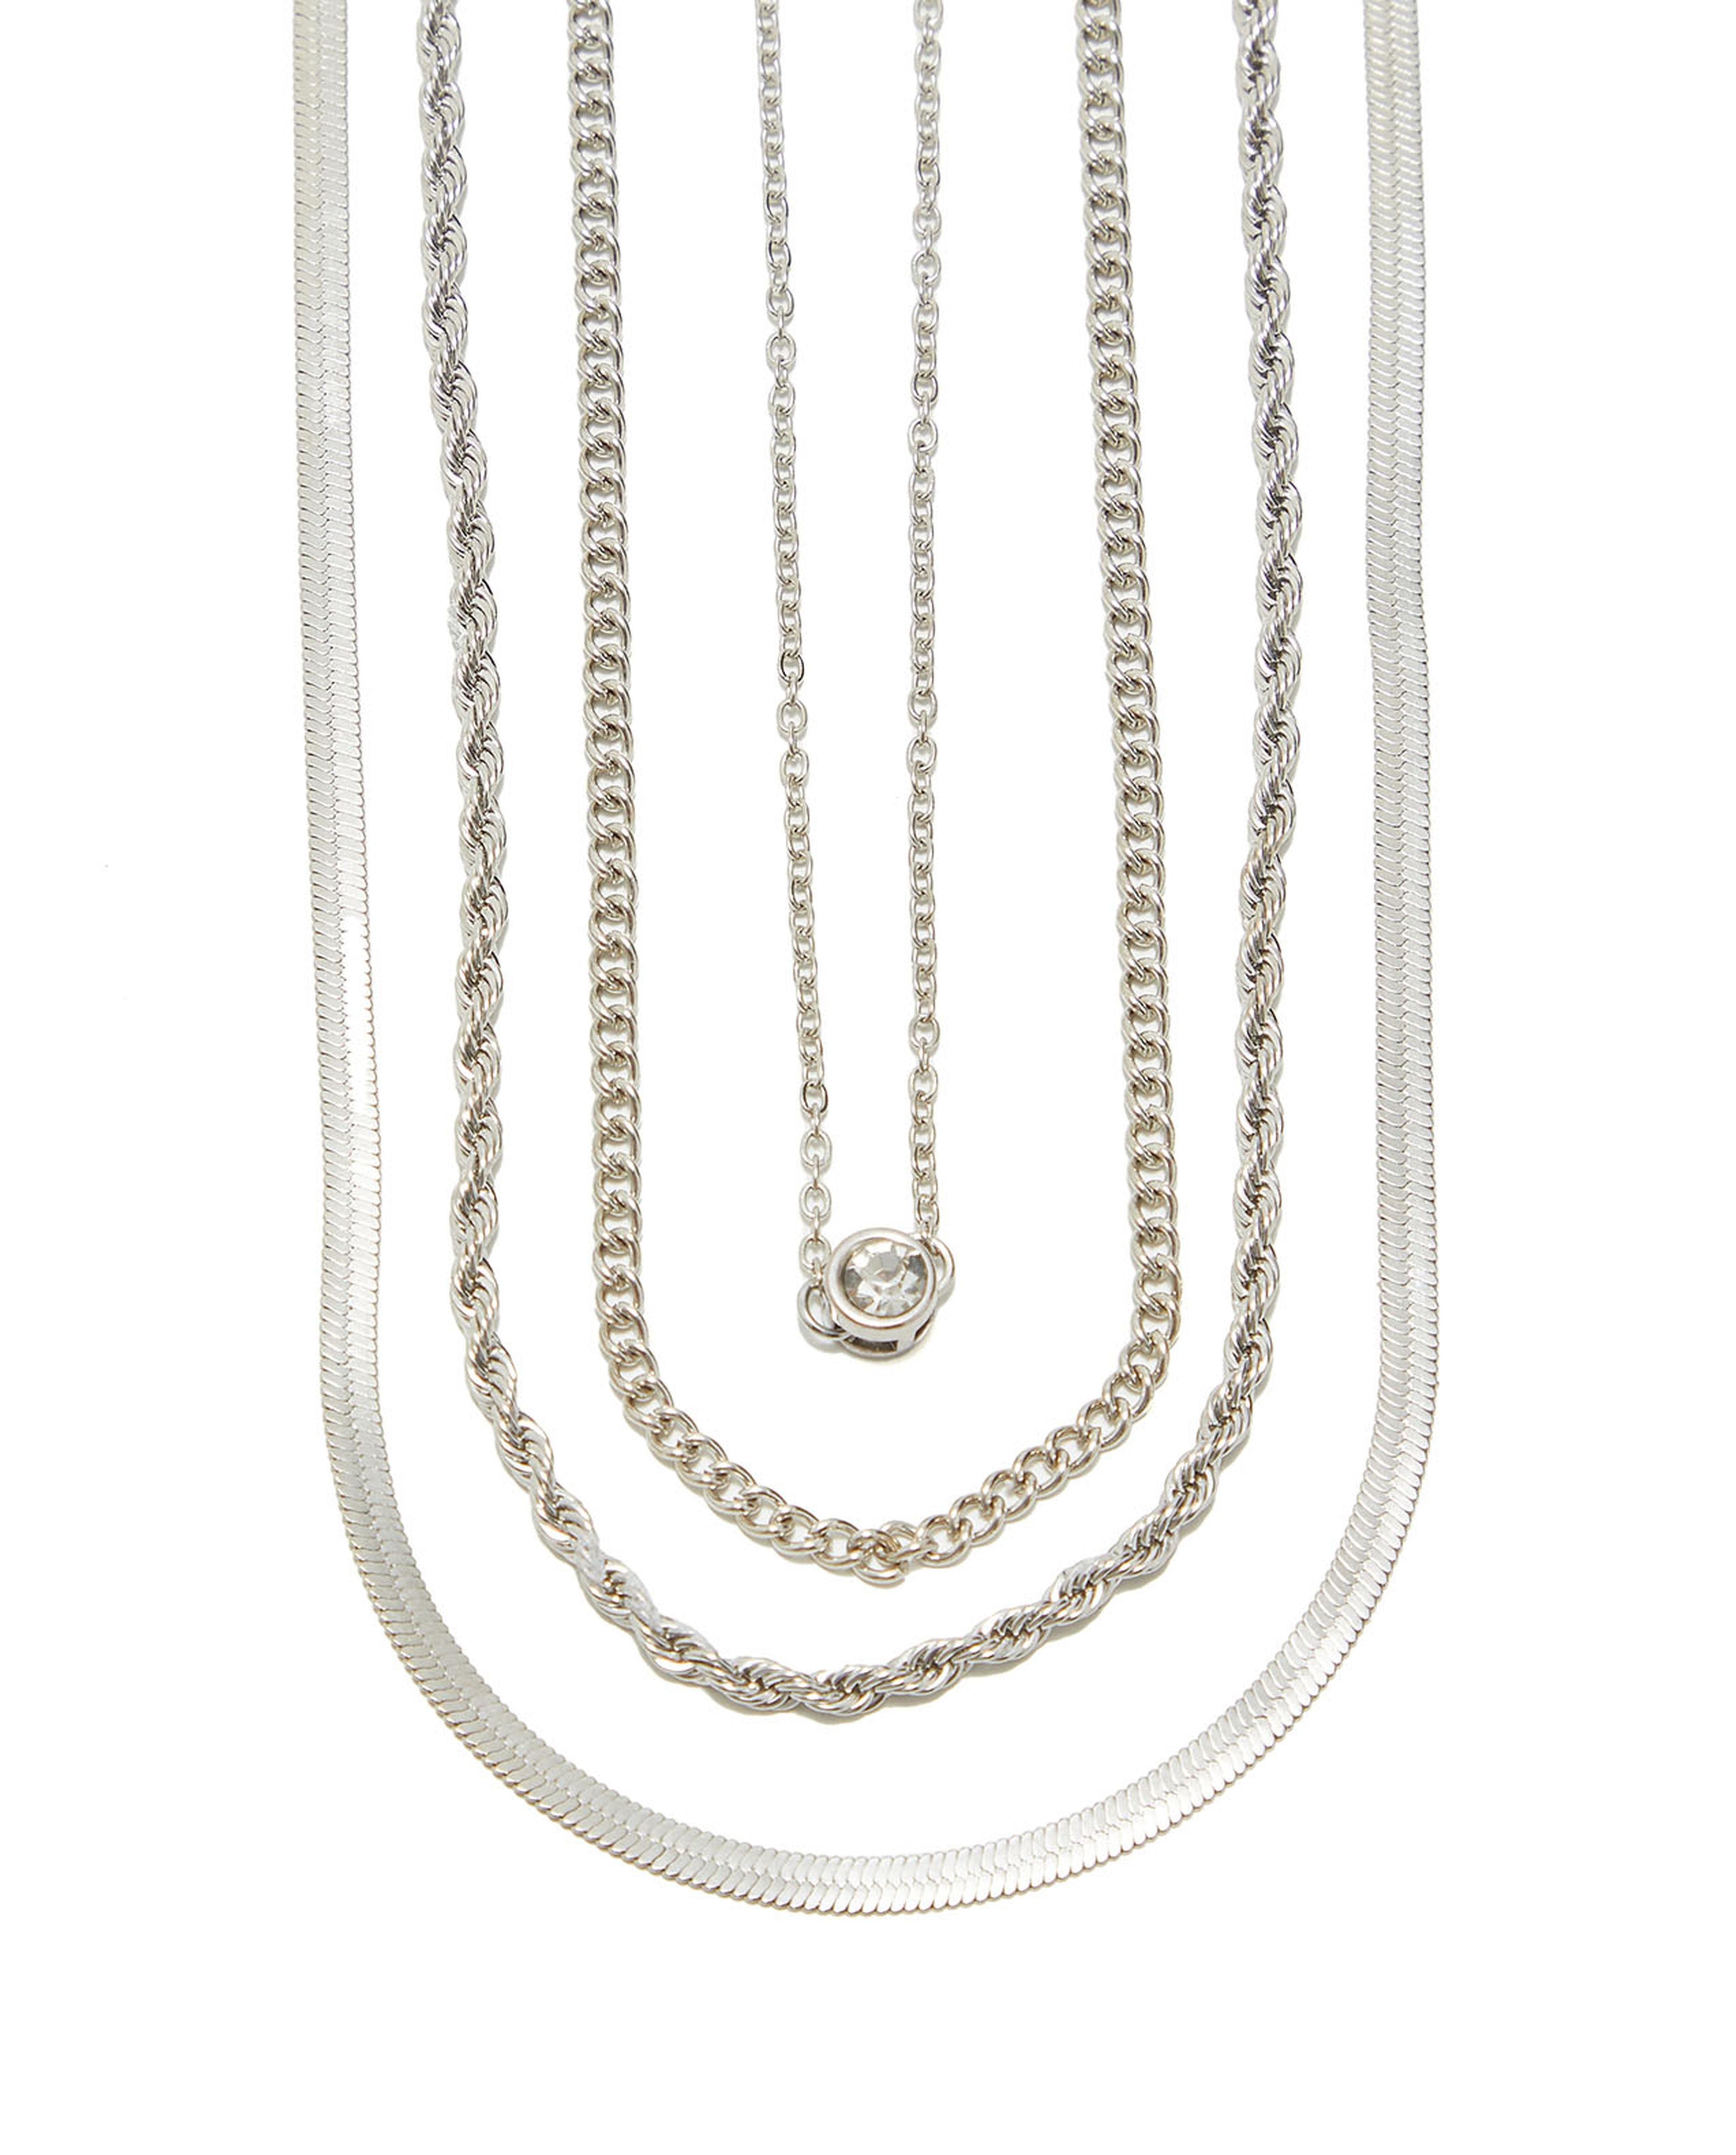 4-Piece Silver-Tone Necklaces